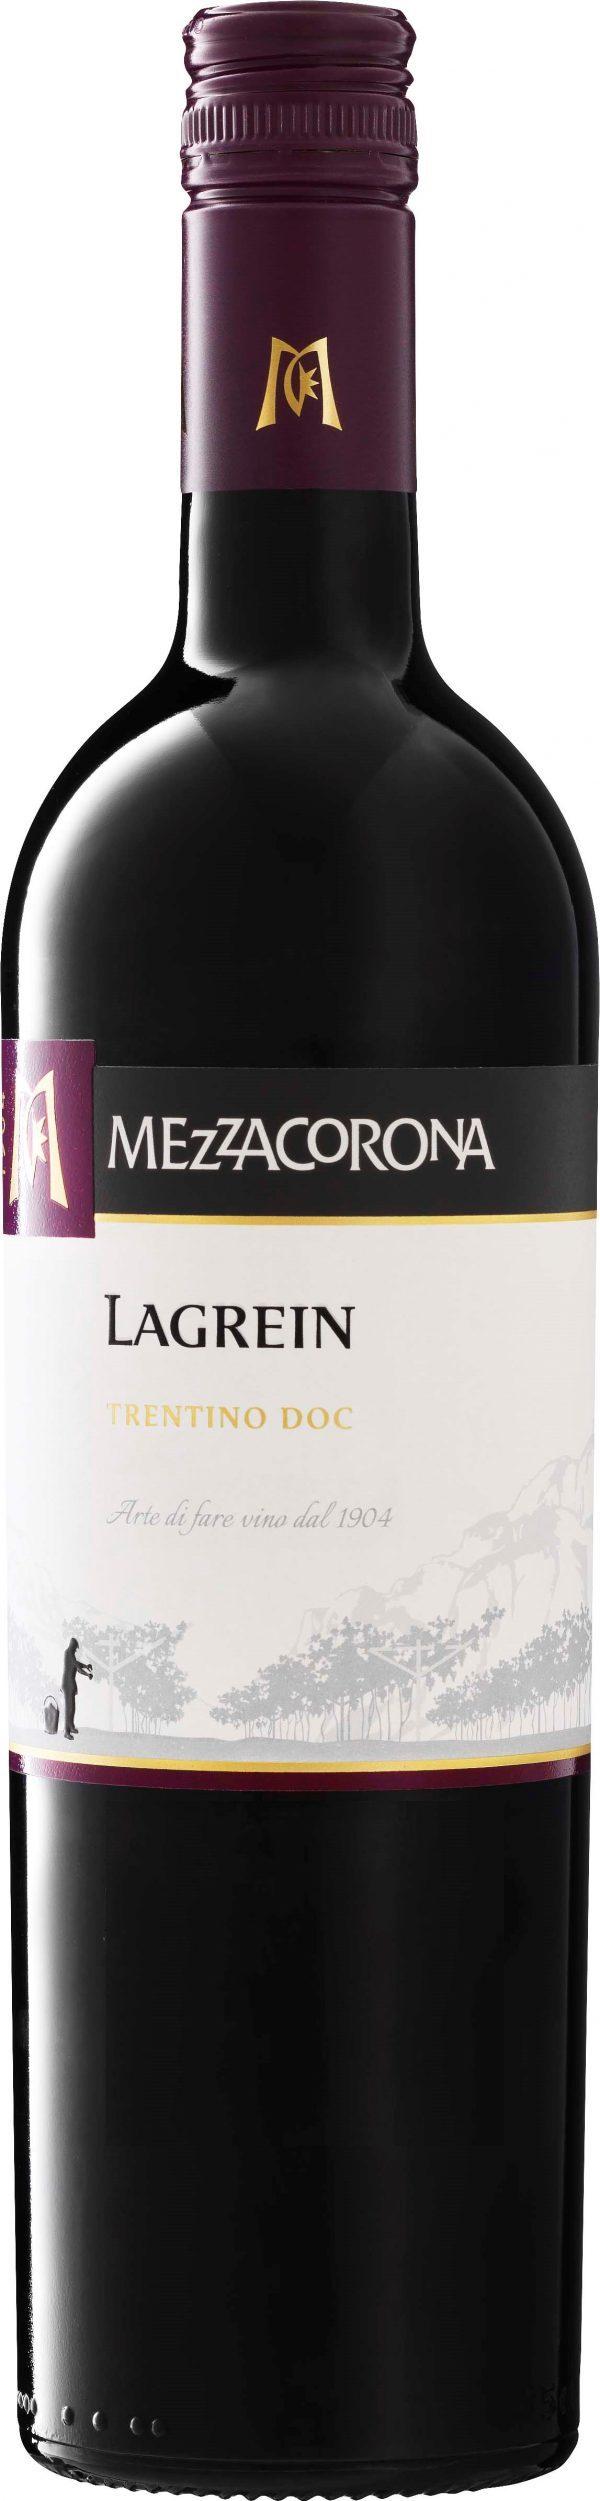 Mezzacorona Lagrein 2016 Trentino- Alto Adige, Italien Medelstor, ung och fruktig doft med karaktär av blåbär, skogsbär, örter och lätt fatkaraktär.